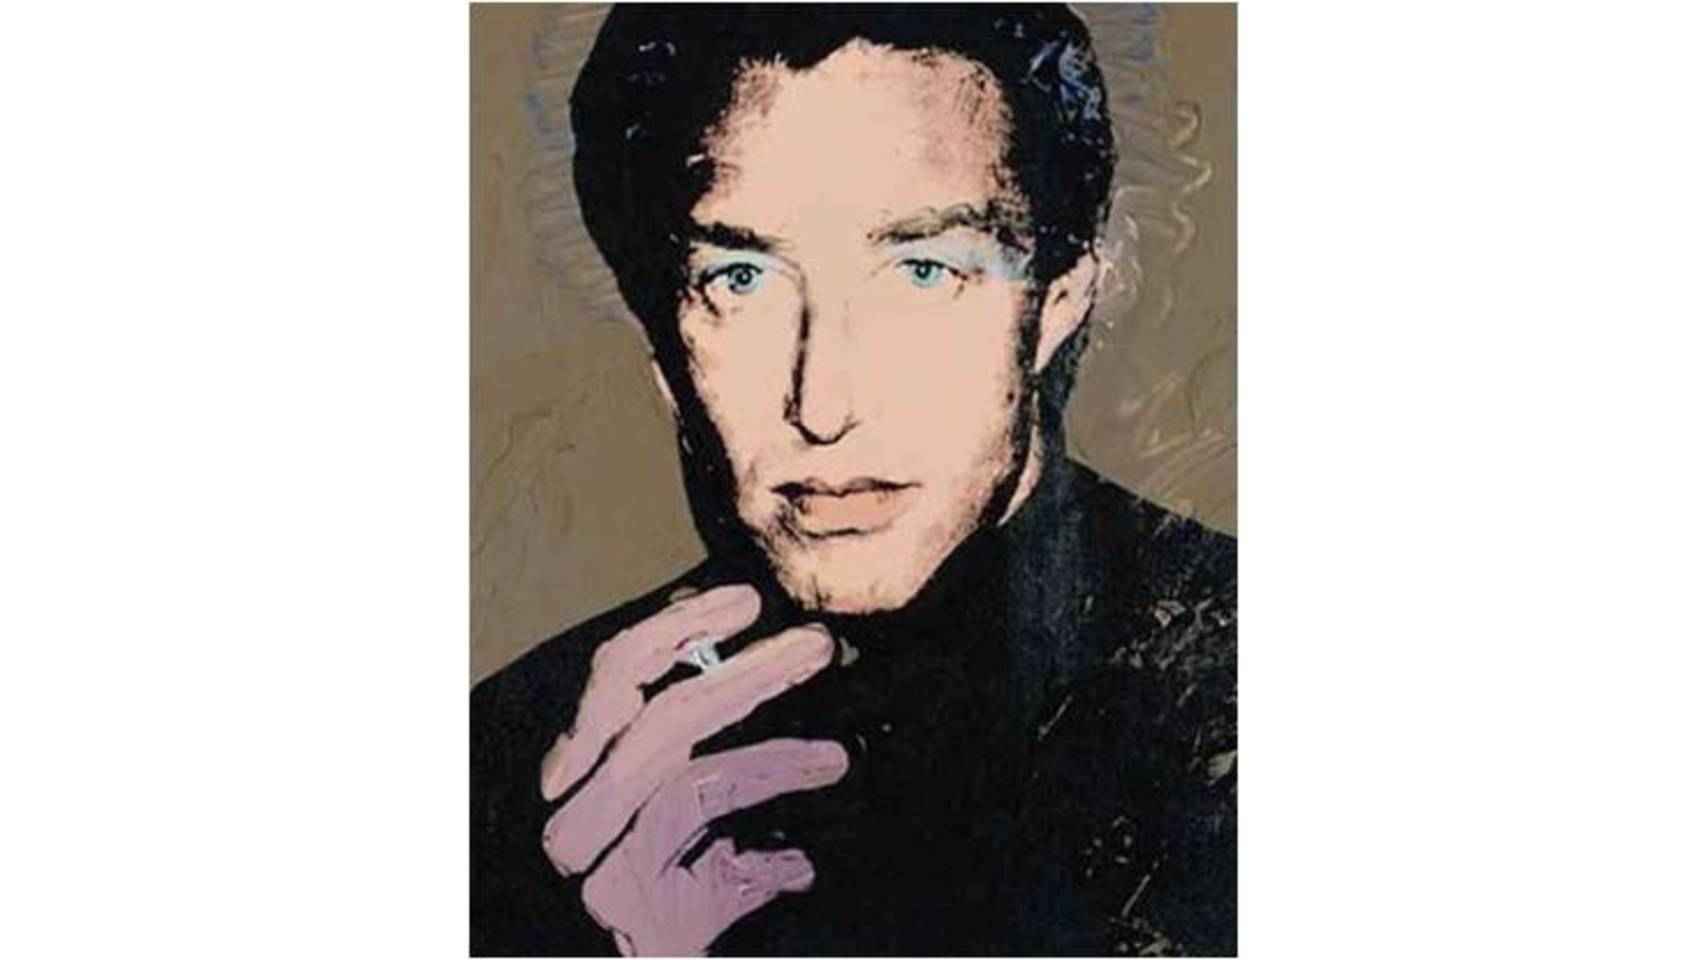 Retrato de Halston pintado por Andy Warhol